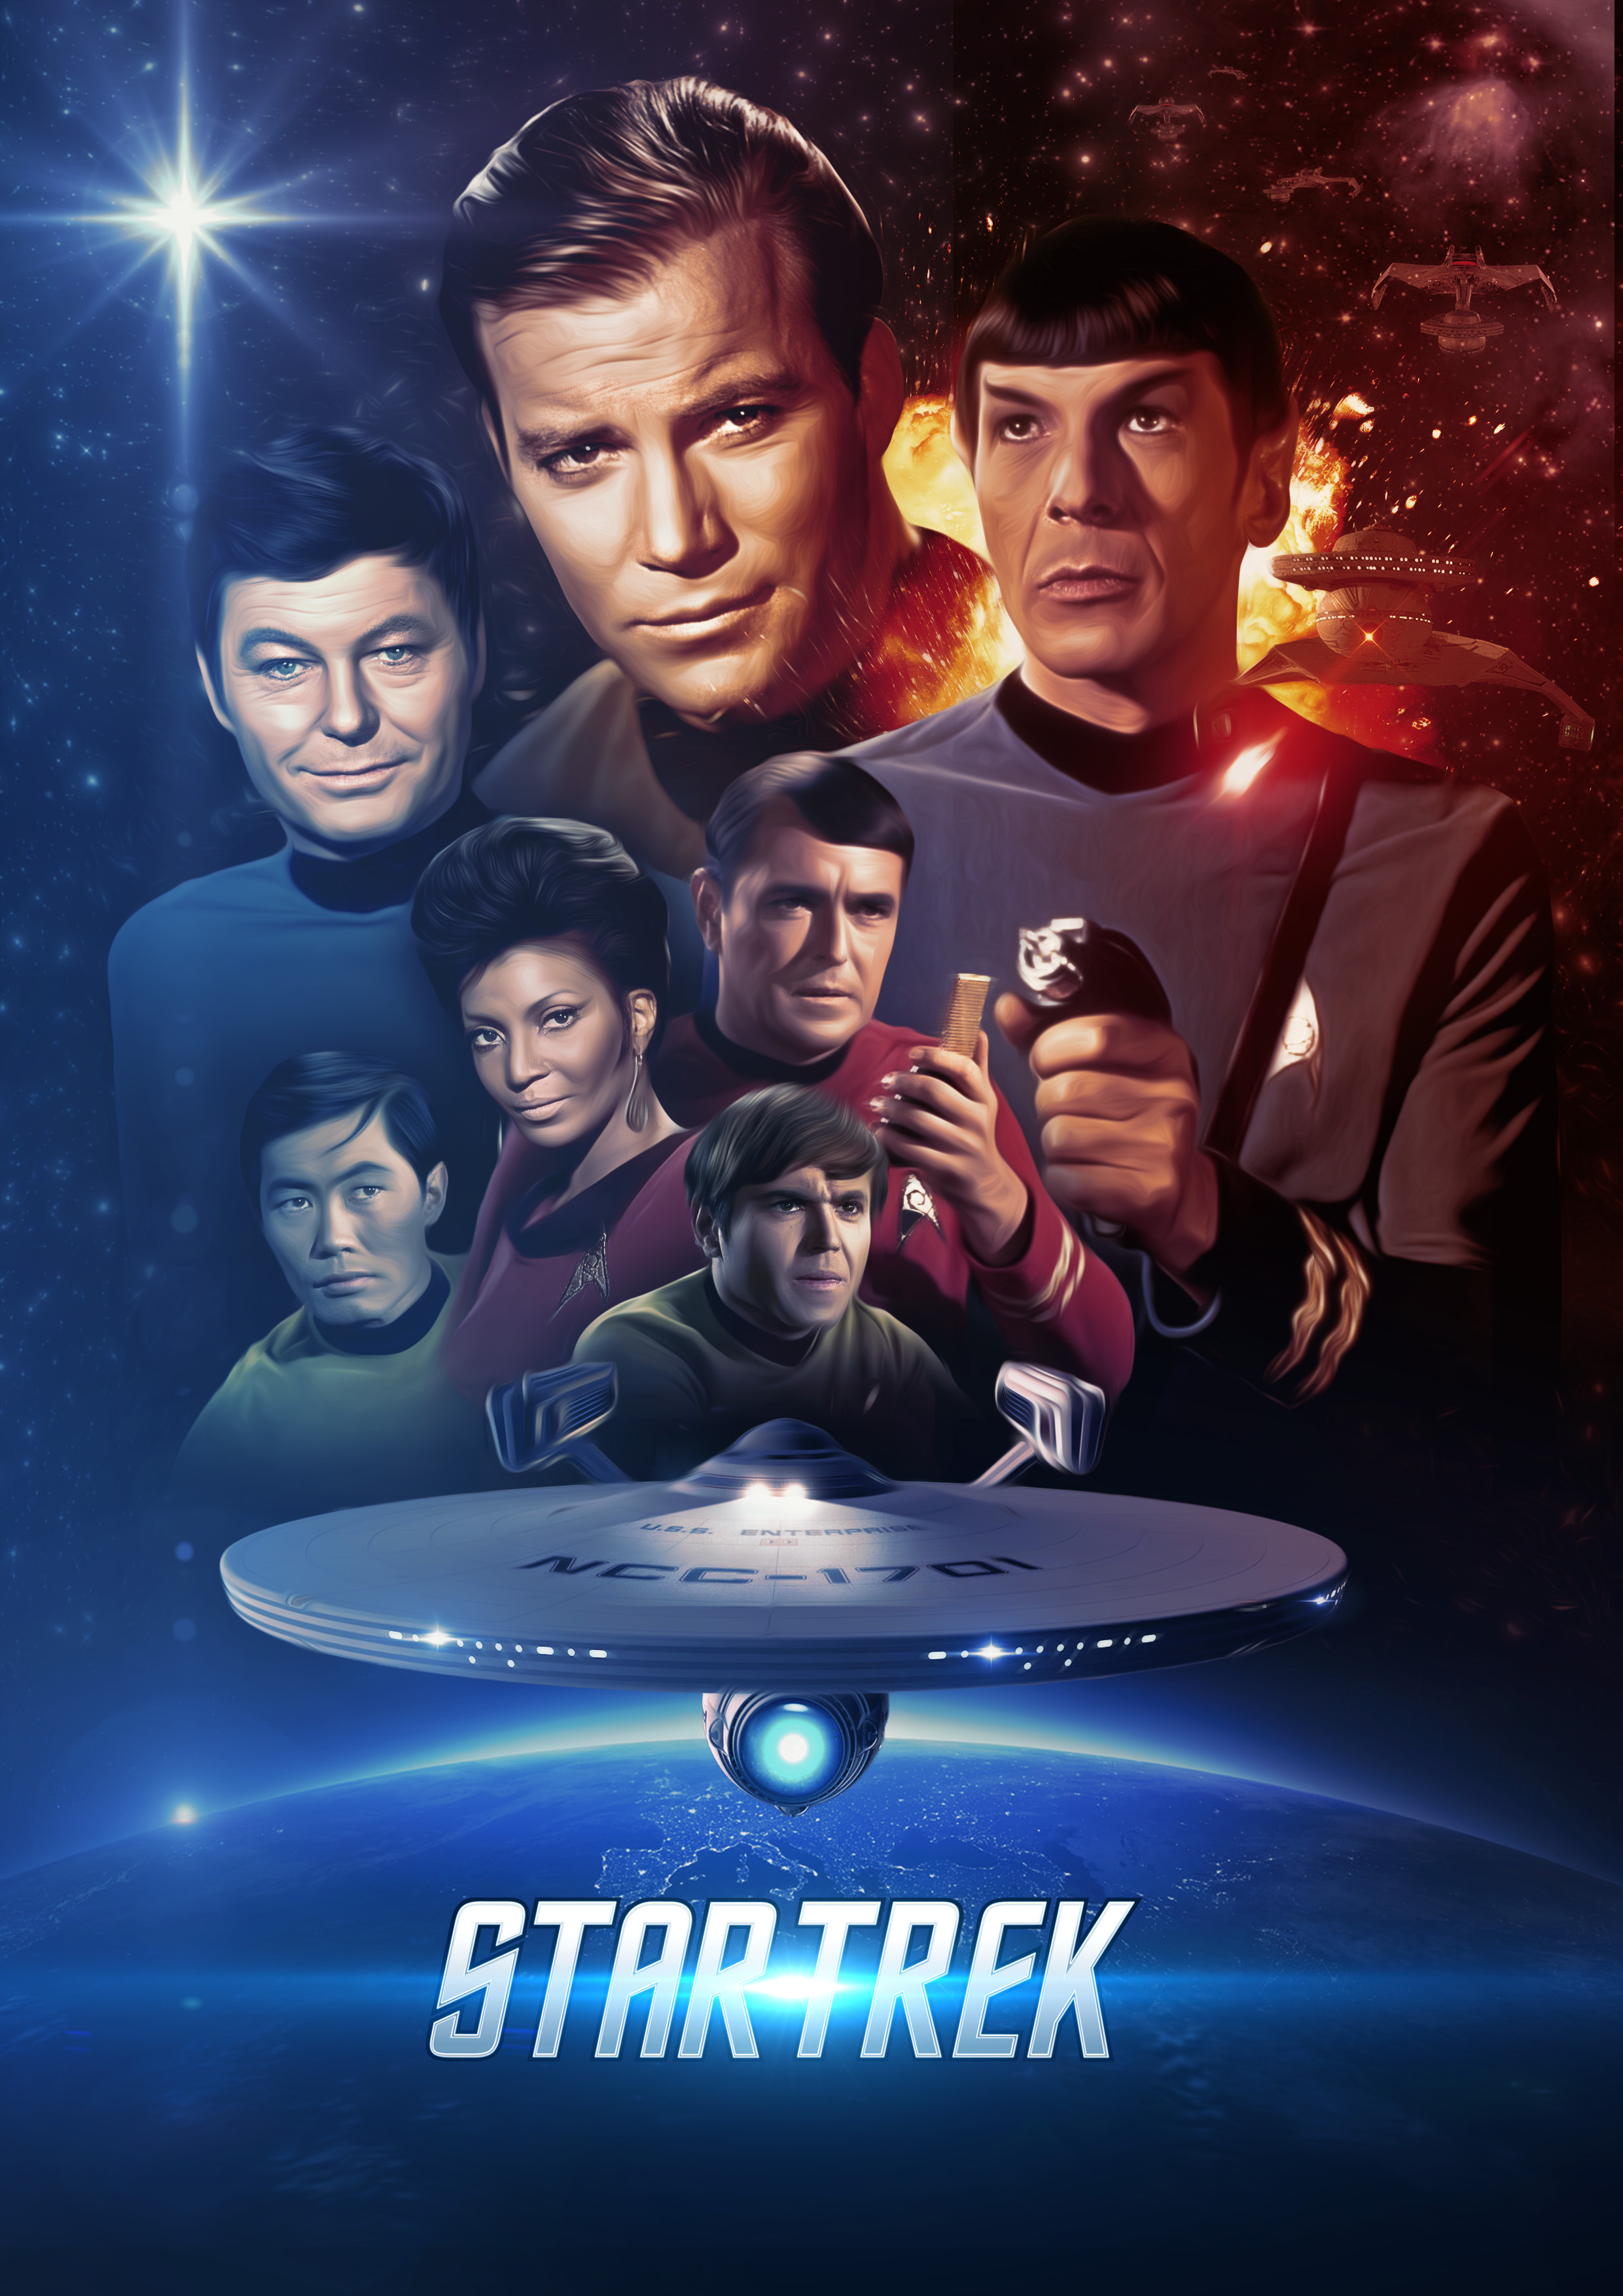  Star Trek: The Original Series